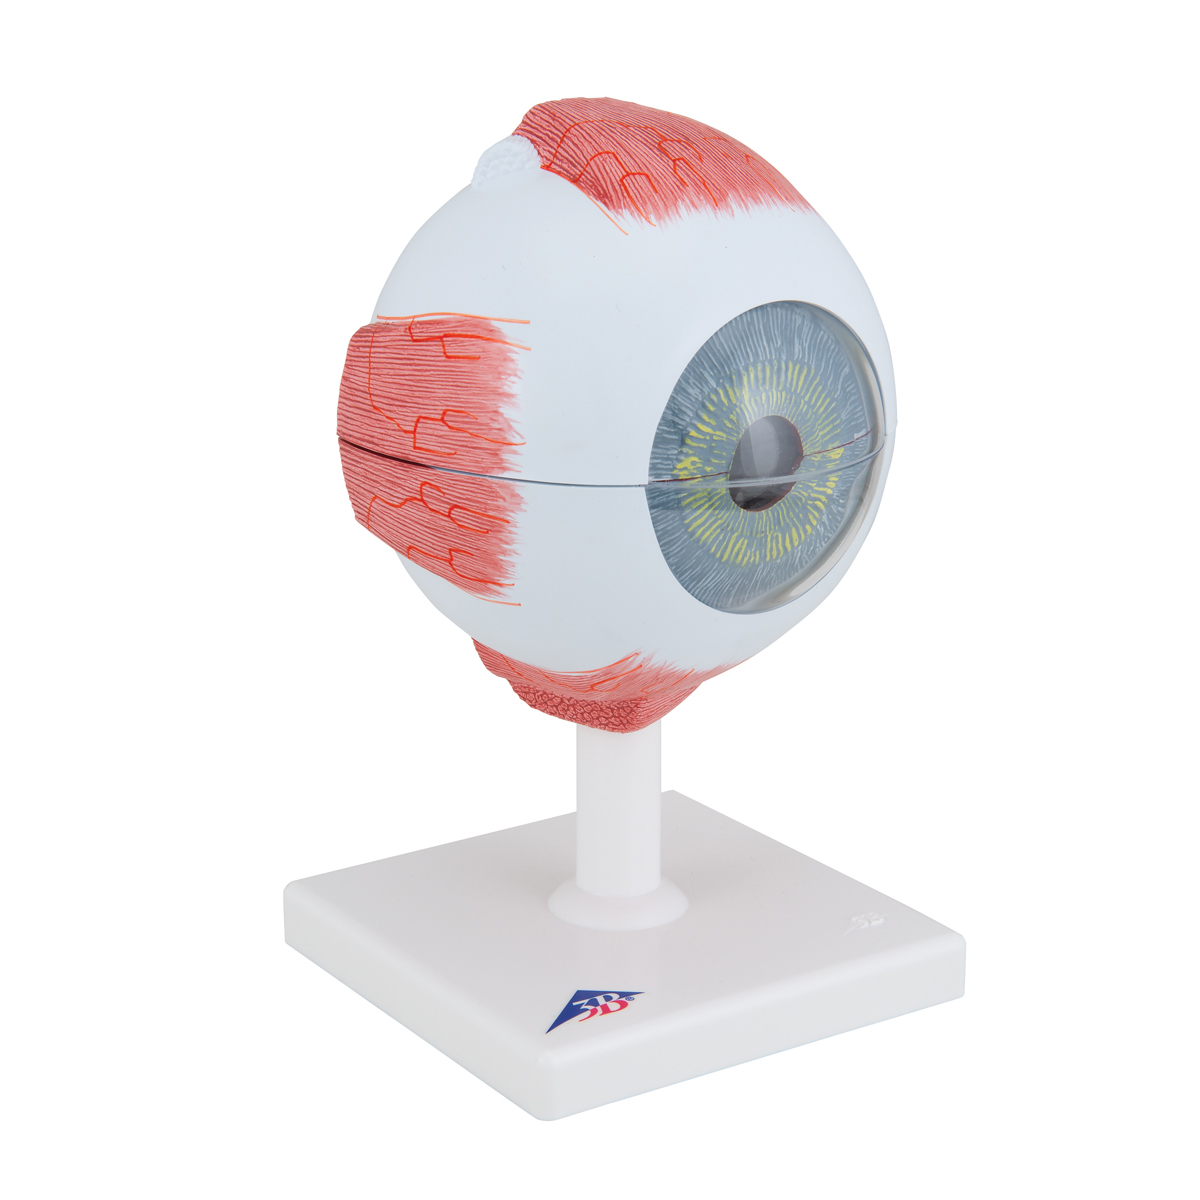 Vergrößerung 3X Human Eye Anatomical Model Kit 6 Teile Für Biologisches Lernen 